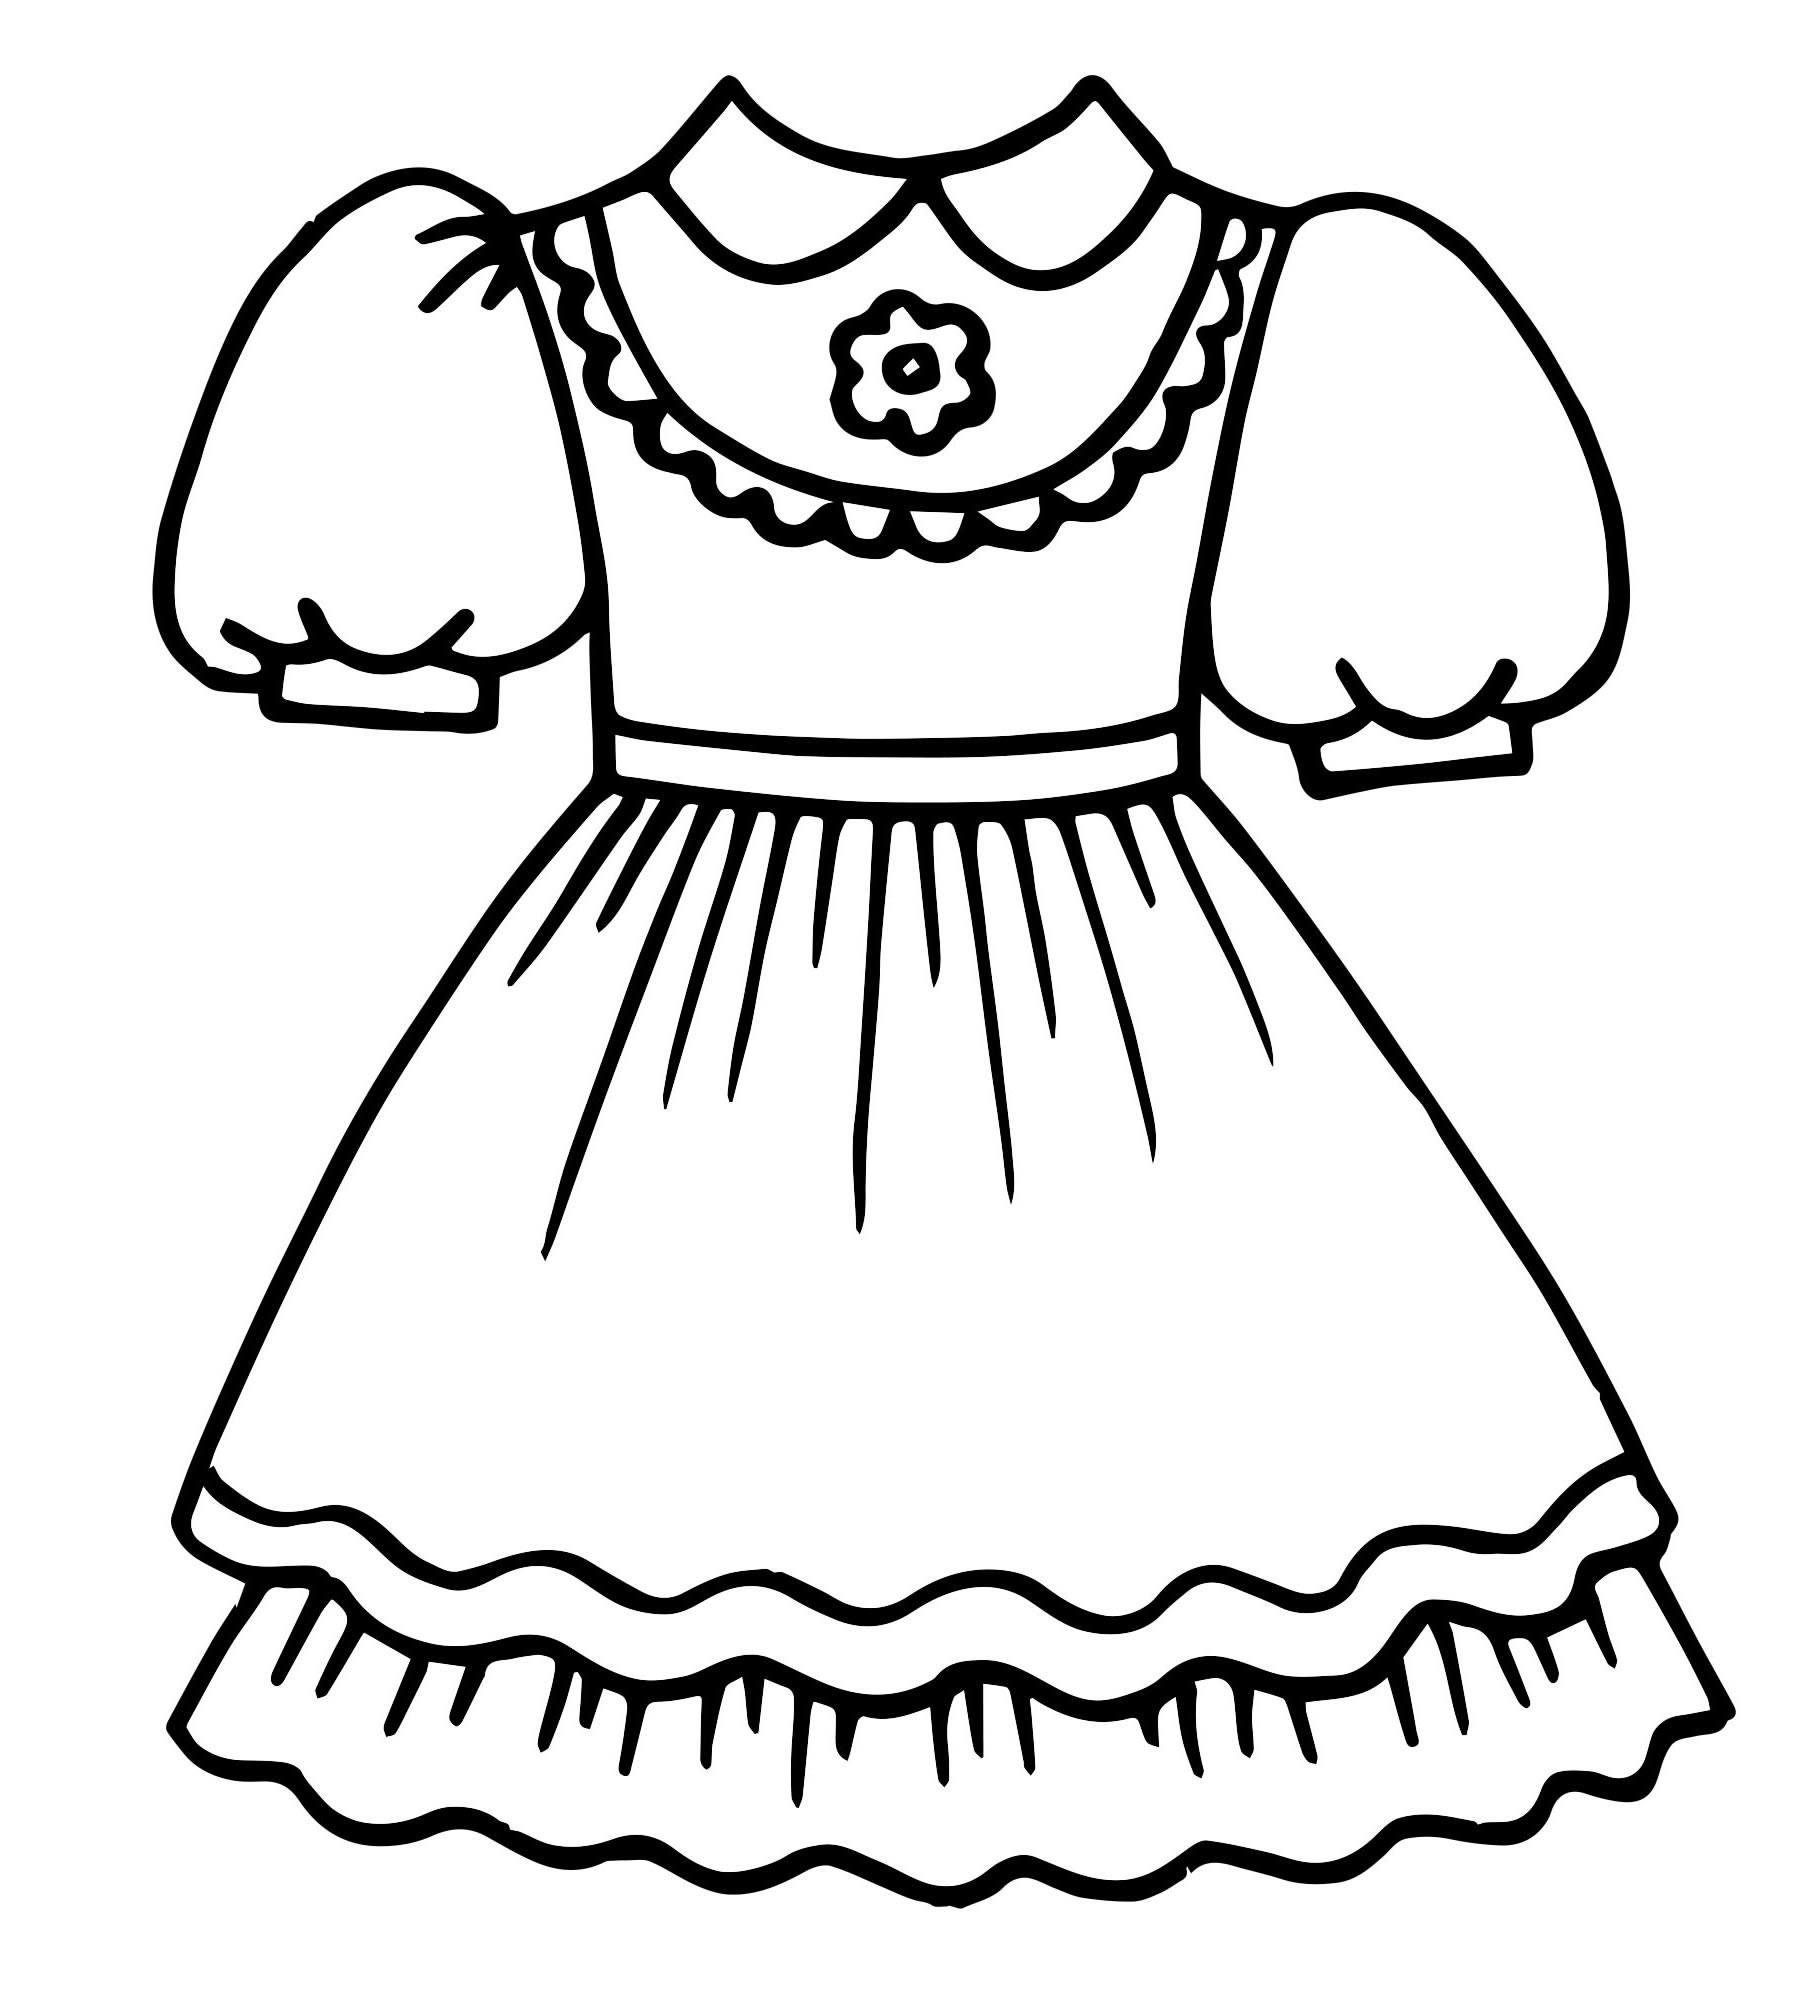 Раскраски платьев 4 года. Раскраска платье. Платье раскраска для детей. Платье для раскрашивания в детском саду. Платье для куклы раскраска для детей.